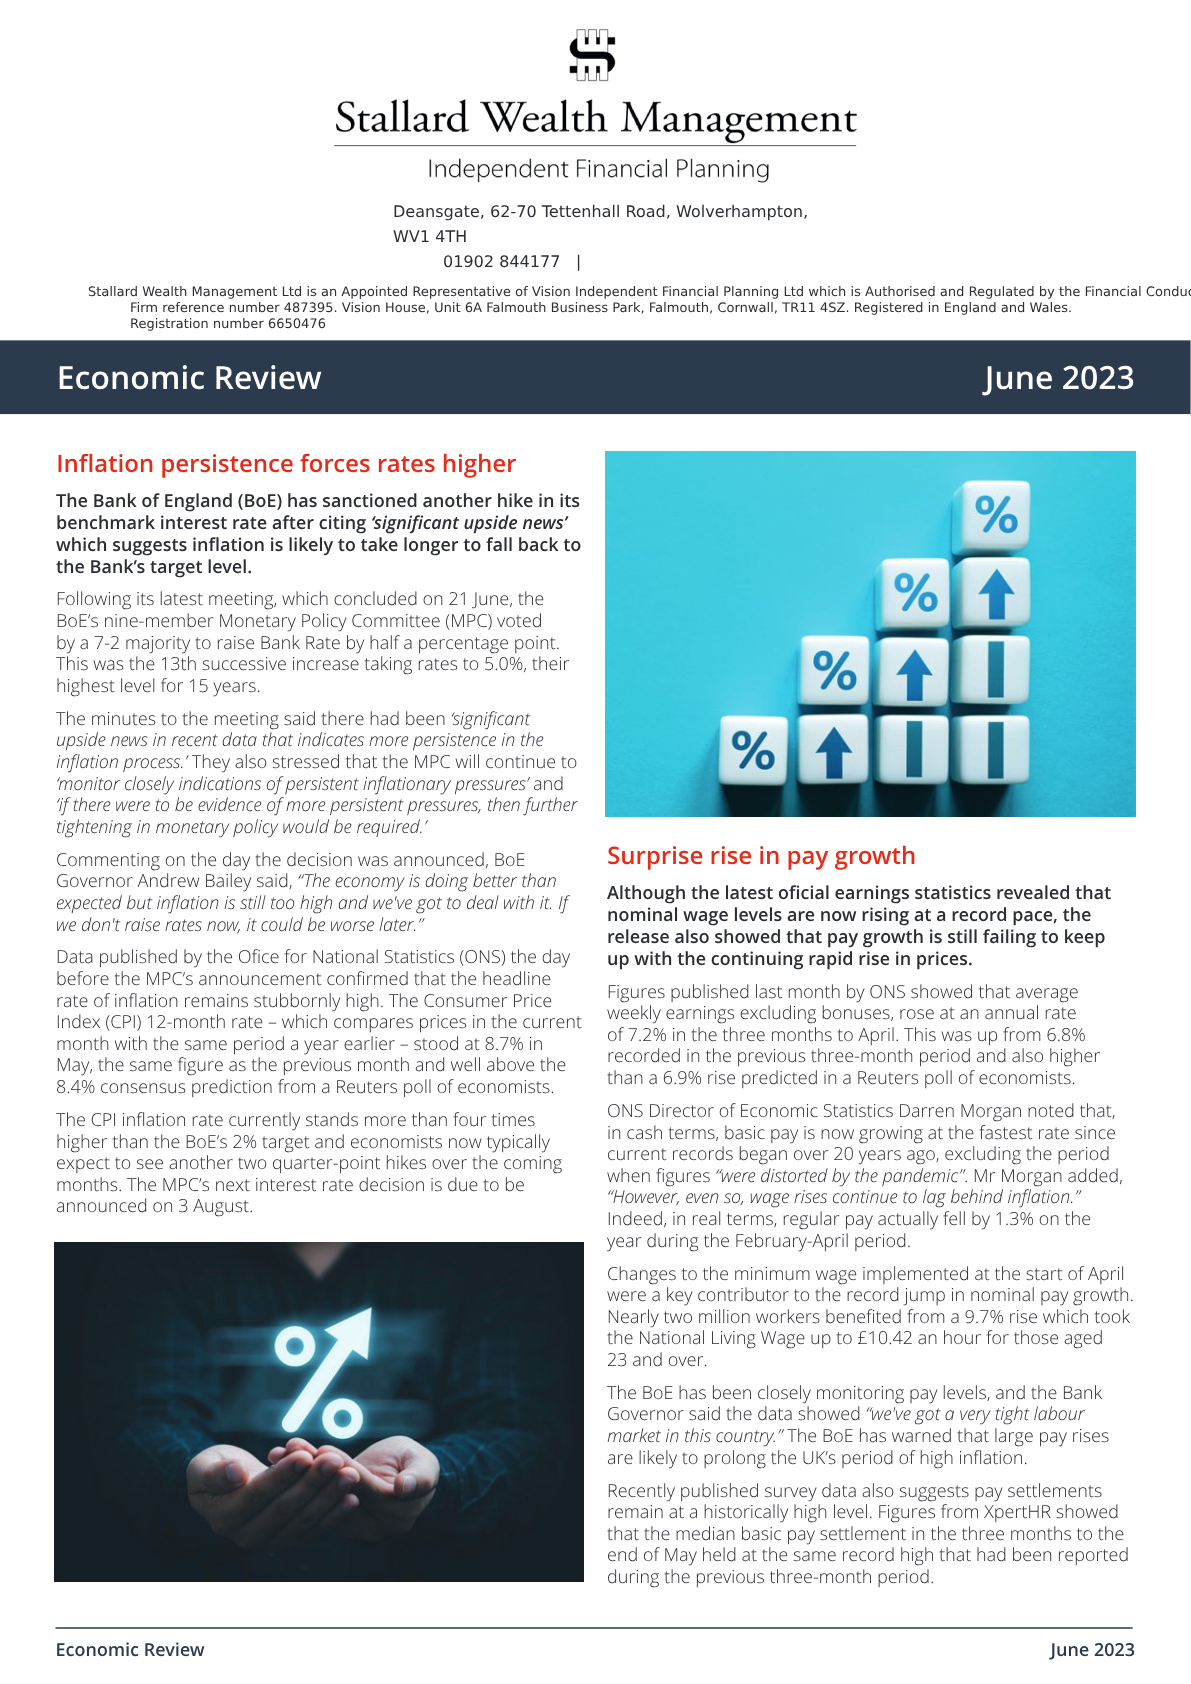 Economic Review June 2023